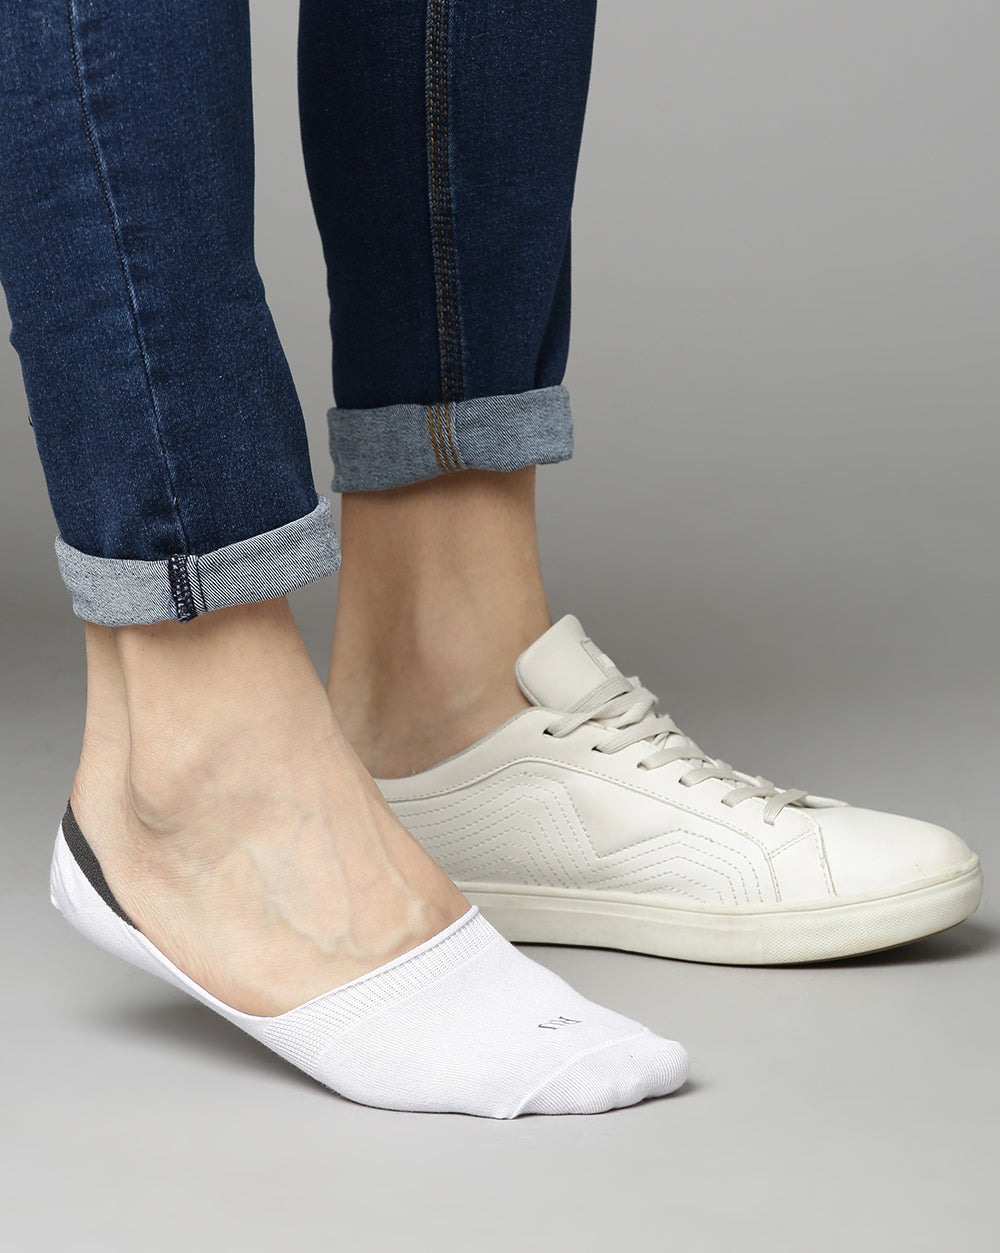 Loafer Socks - White/Light Grey